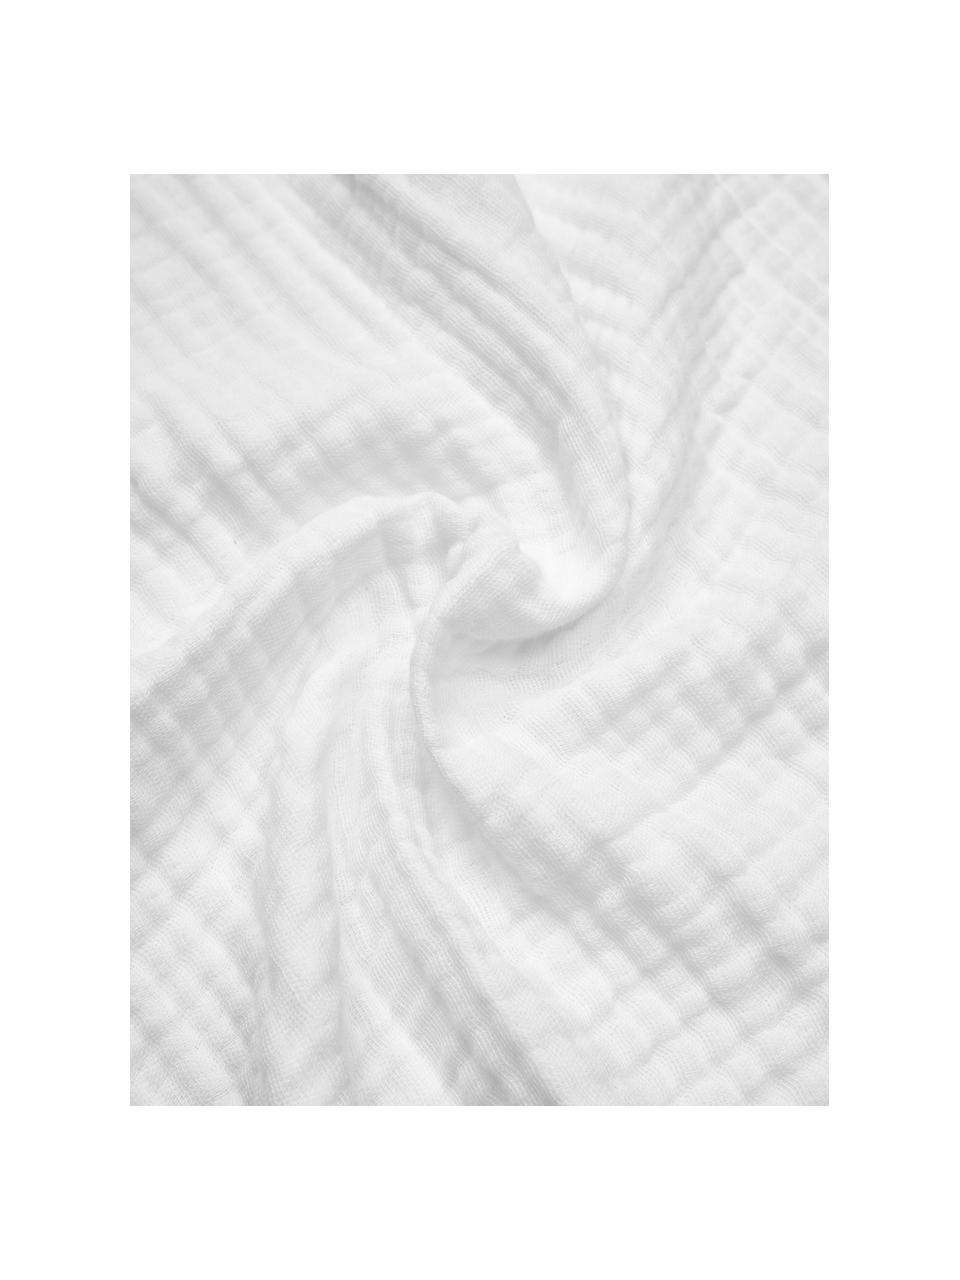 Tagesdecke Candela aus Bio-Baumwollmusselin in Weiß, 100% Bio-Baumwolle, GOTS zertifiziert, Weiß, B 150 x L 250 cm (für Betten bis 100 x 200 cm)